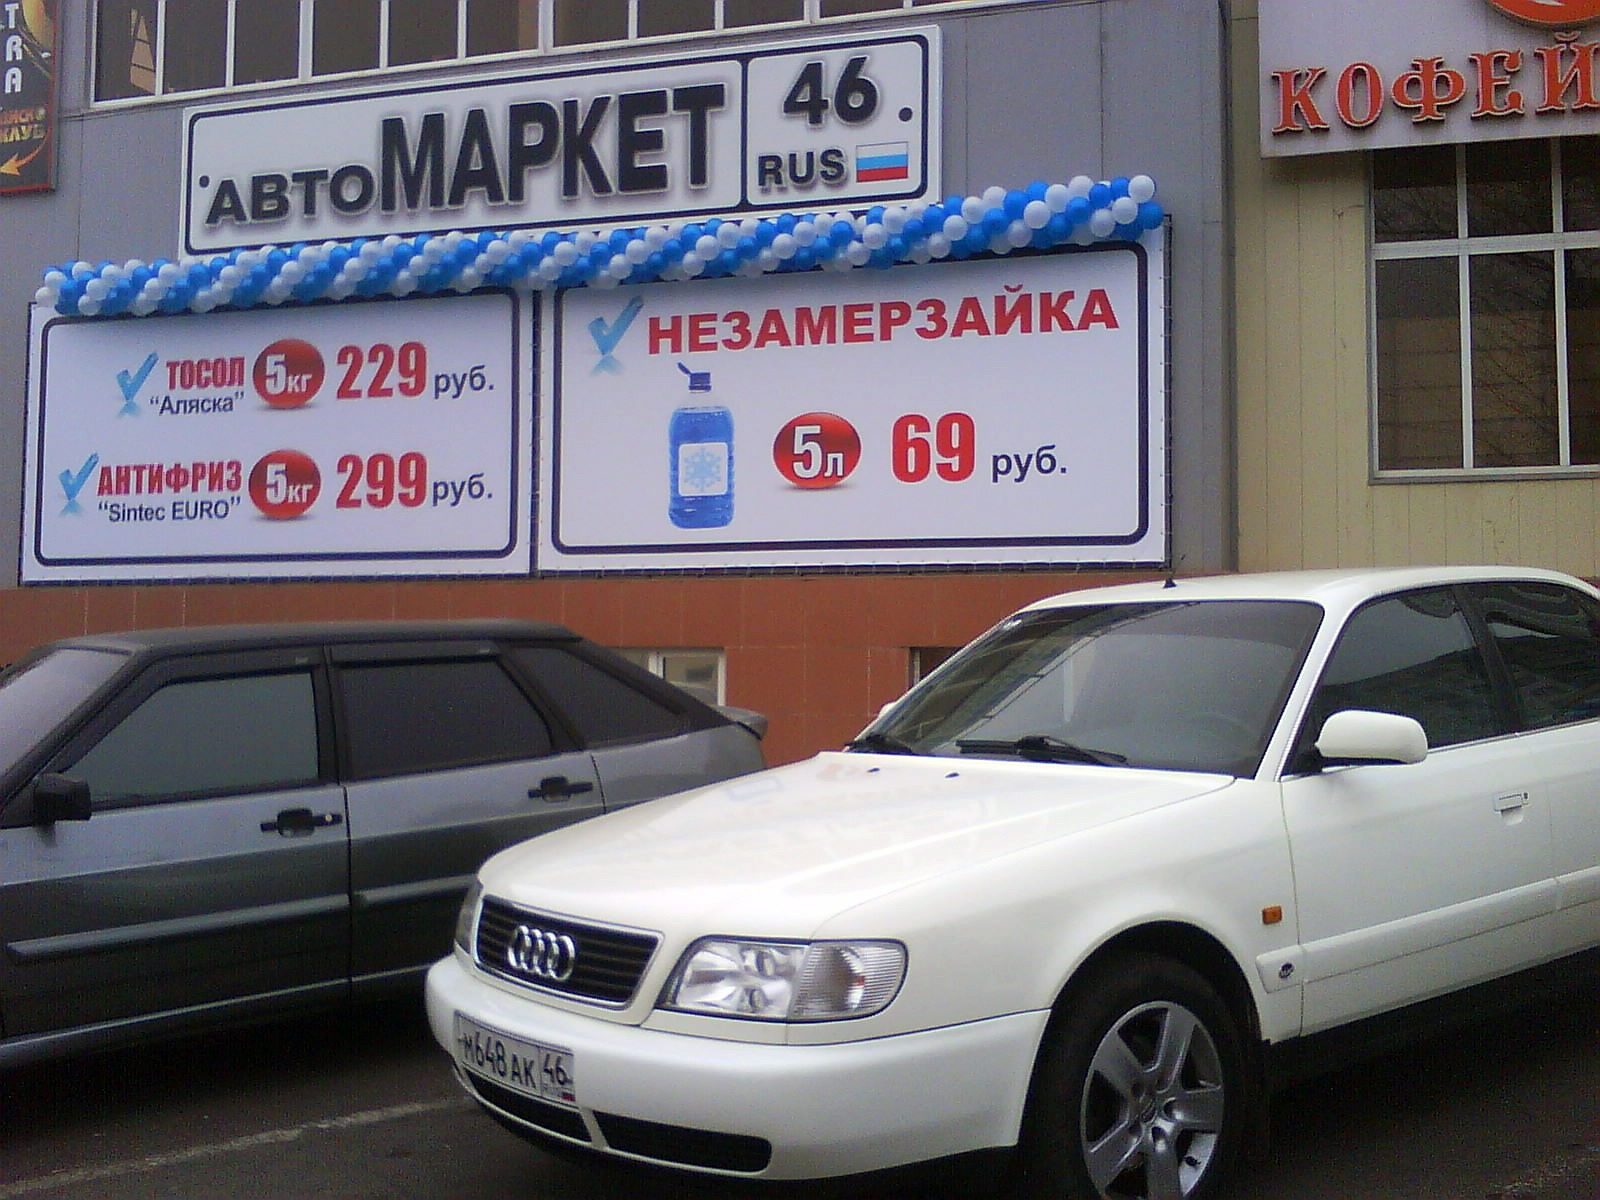 Машине маркет магазине. Автомаркет 46 Курск. Маркет 46 Курске. ККЕ Автомаркет Белгород.